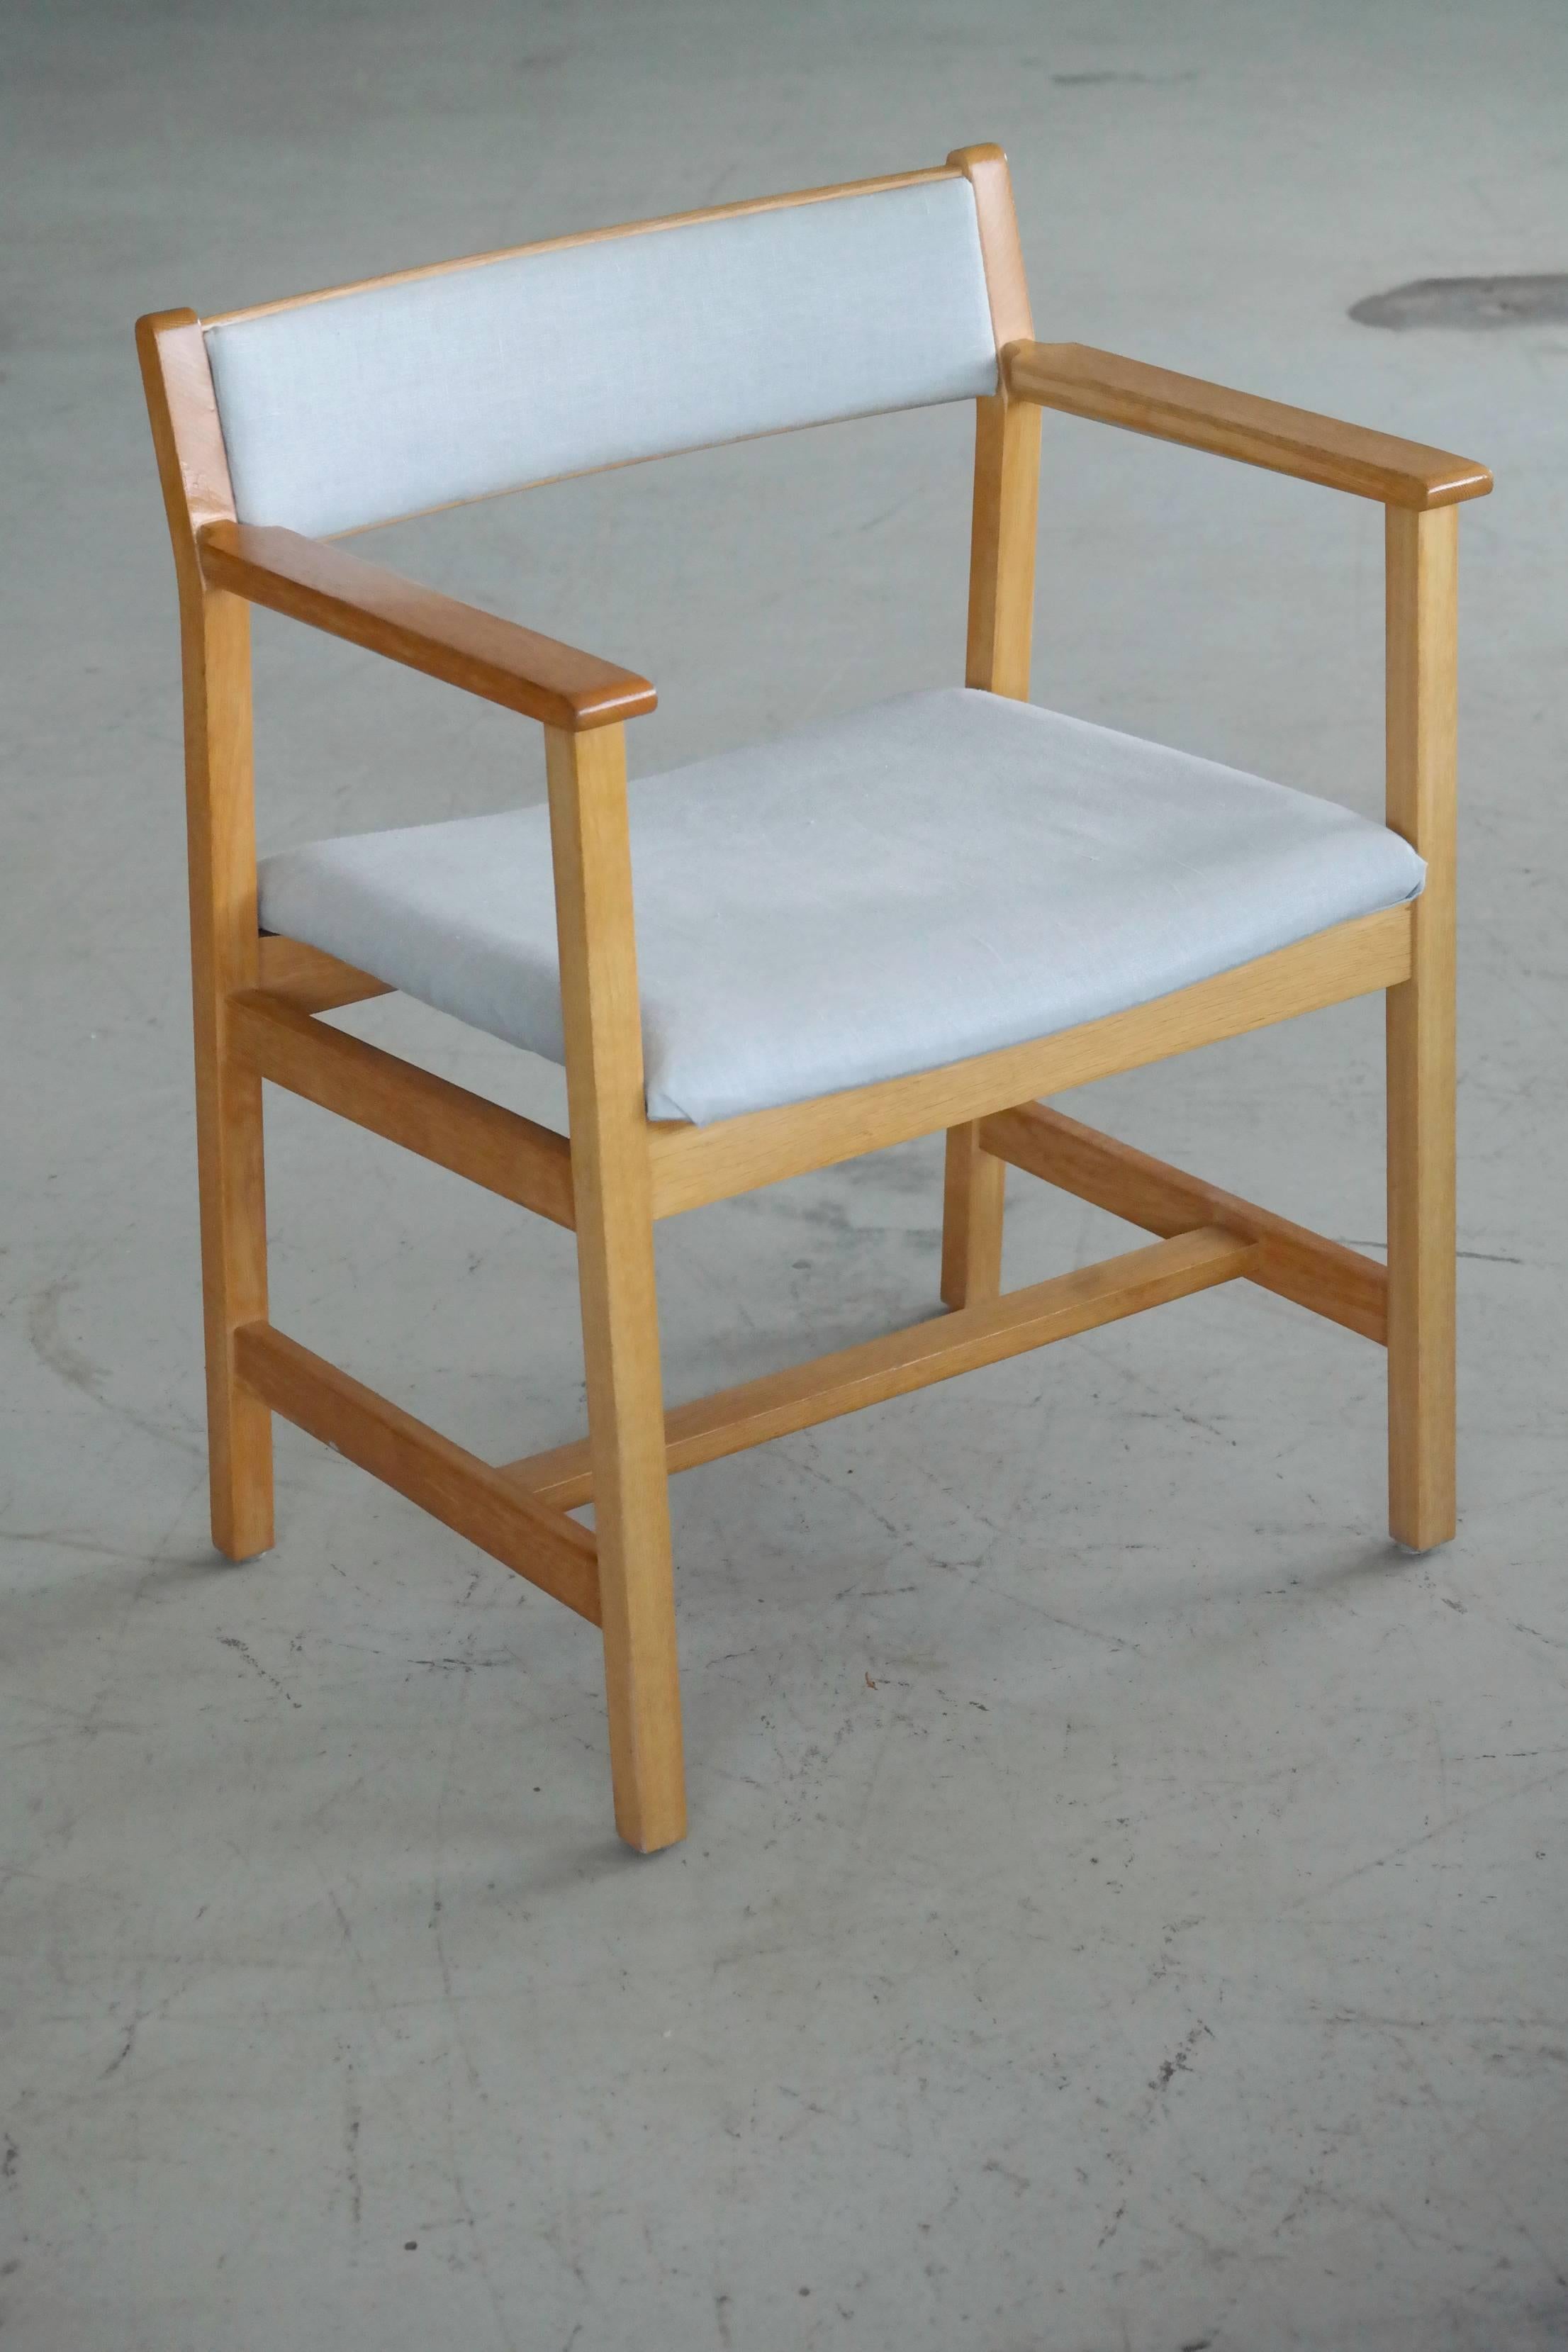 Beau fauteuil conçu par Børge Mogensen dans les années 1960 et fabriqué par Fredericia. Typique de l'élégance intemporelle de Mogensen, avec ses lignes minimales, nettes et raffinées. Fabriqué en chêne avec l'étiquette du fabricant dans le fond.